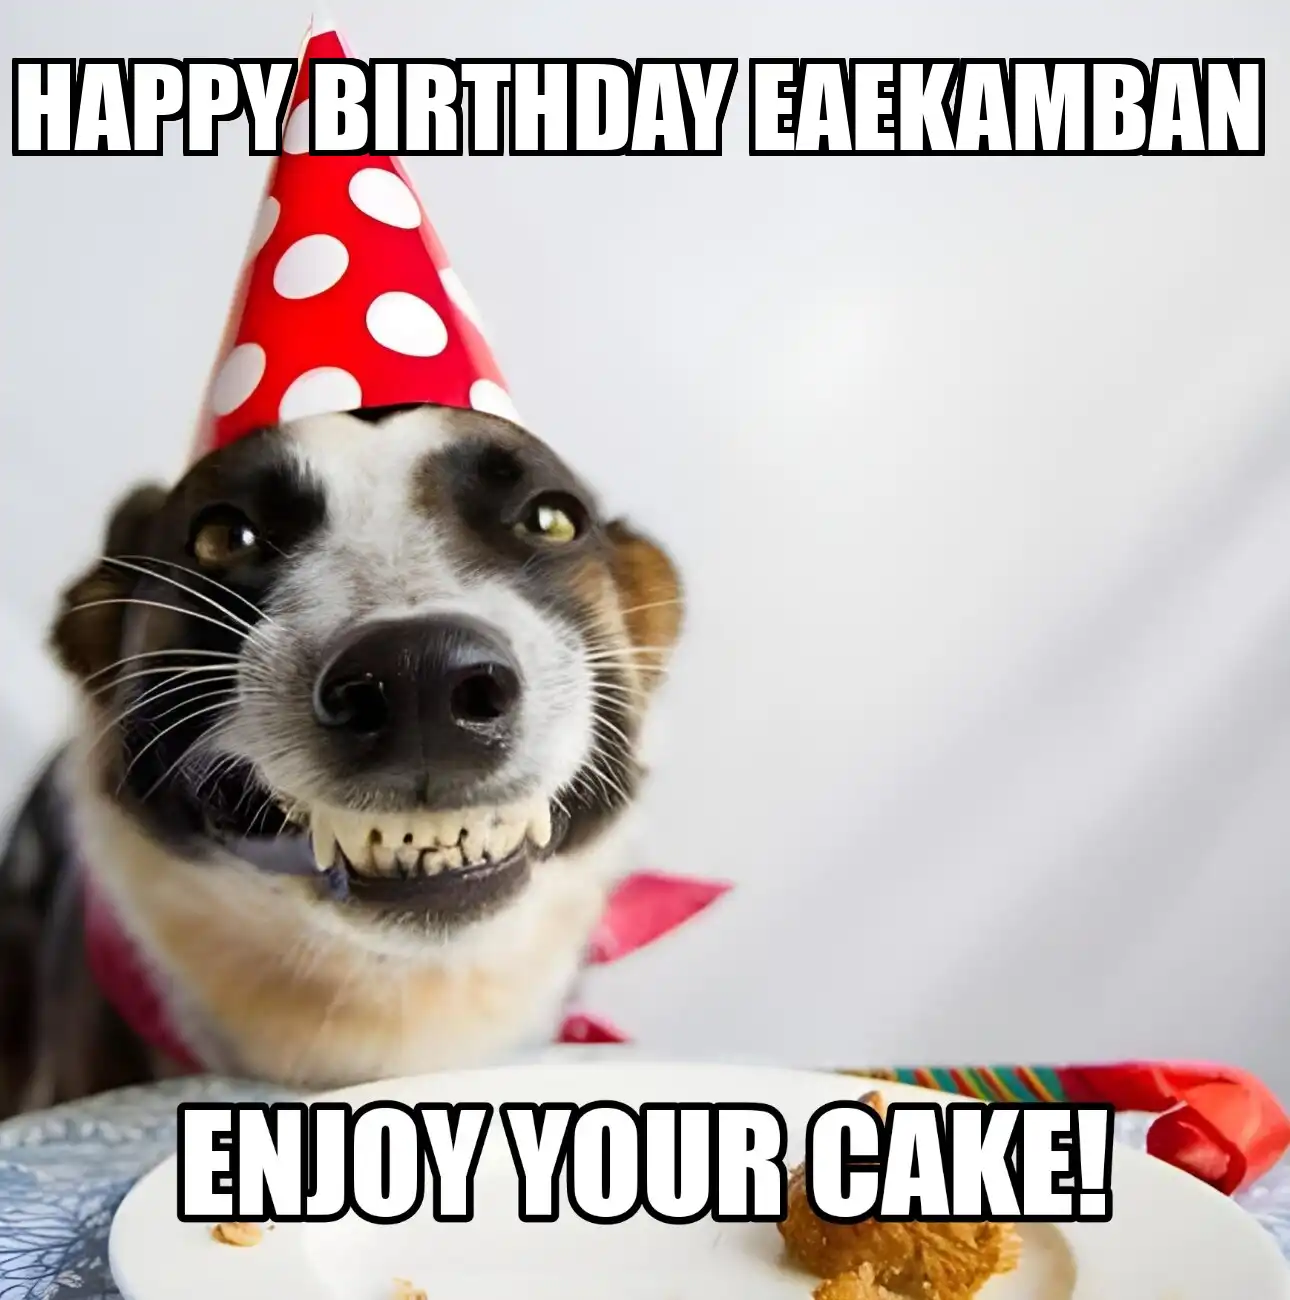 Happy Birthday Eaekamban Enjoy Your Cake Dog Meme